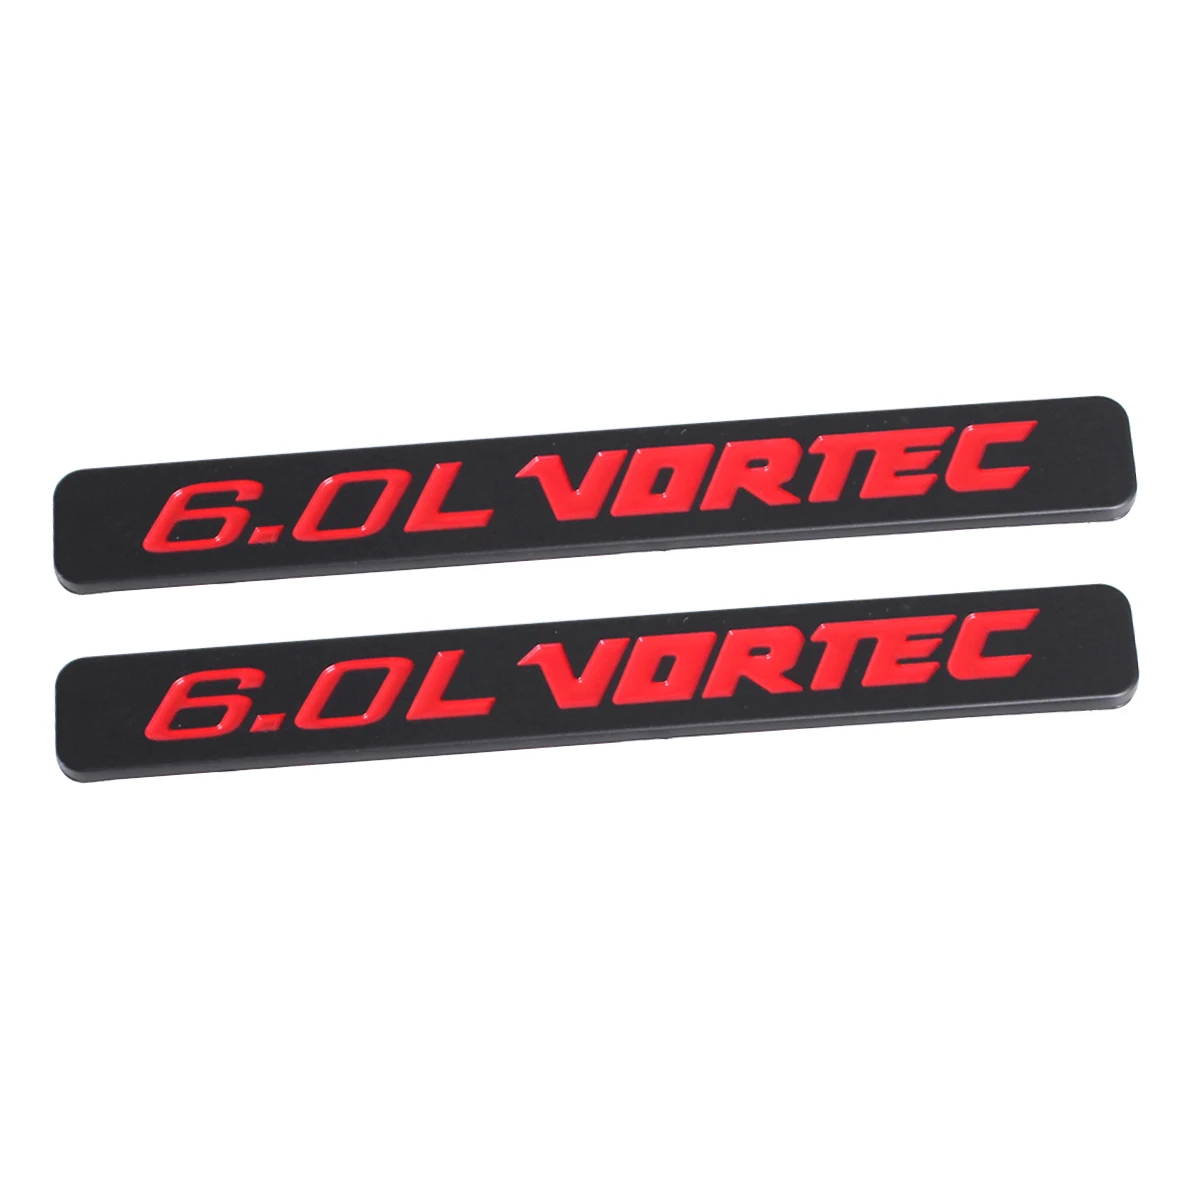 2pcs 6.0L Vortec Hood Max Engine Car Fender Door Emblem Badges Decal Sticker